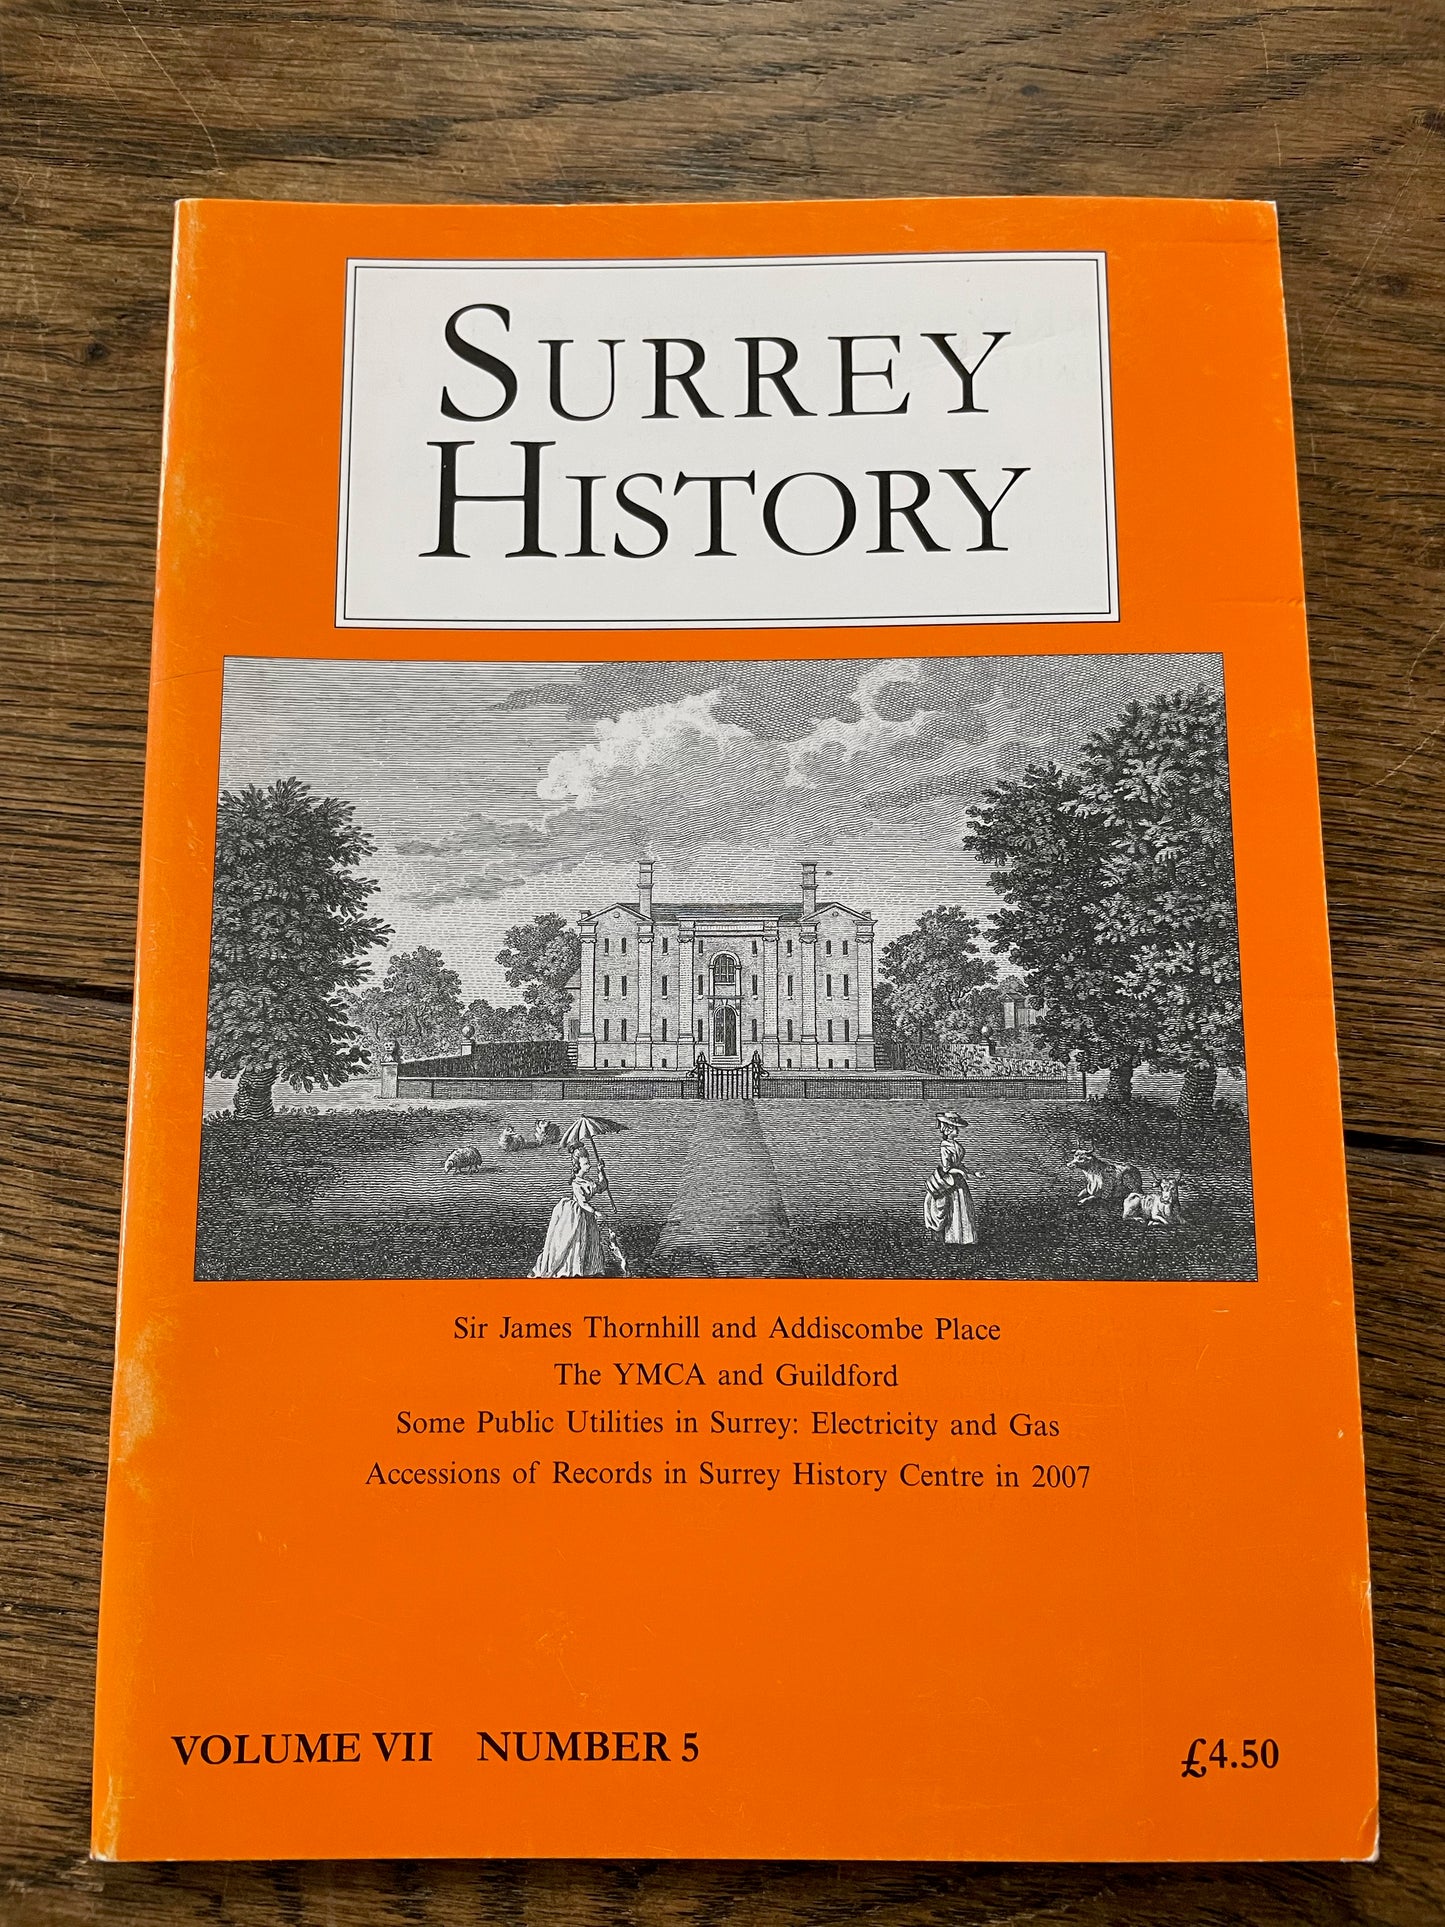 Surrey History Vol. VII No. 5 (2007)